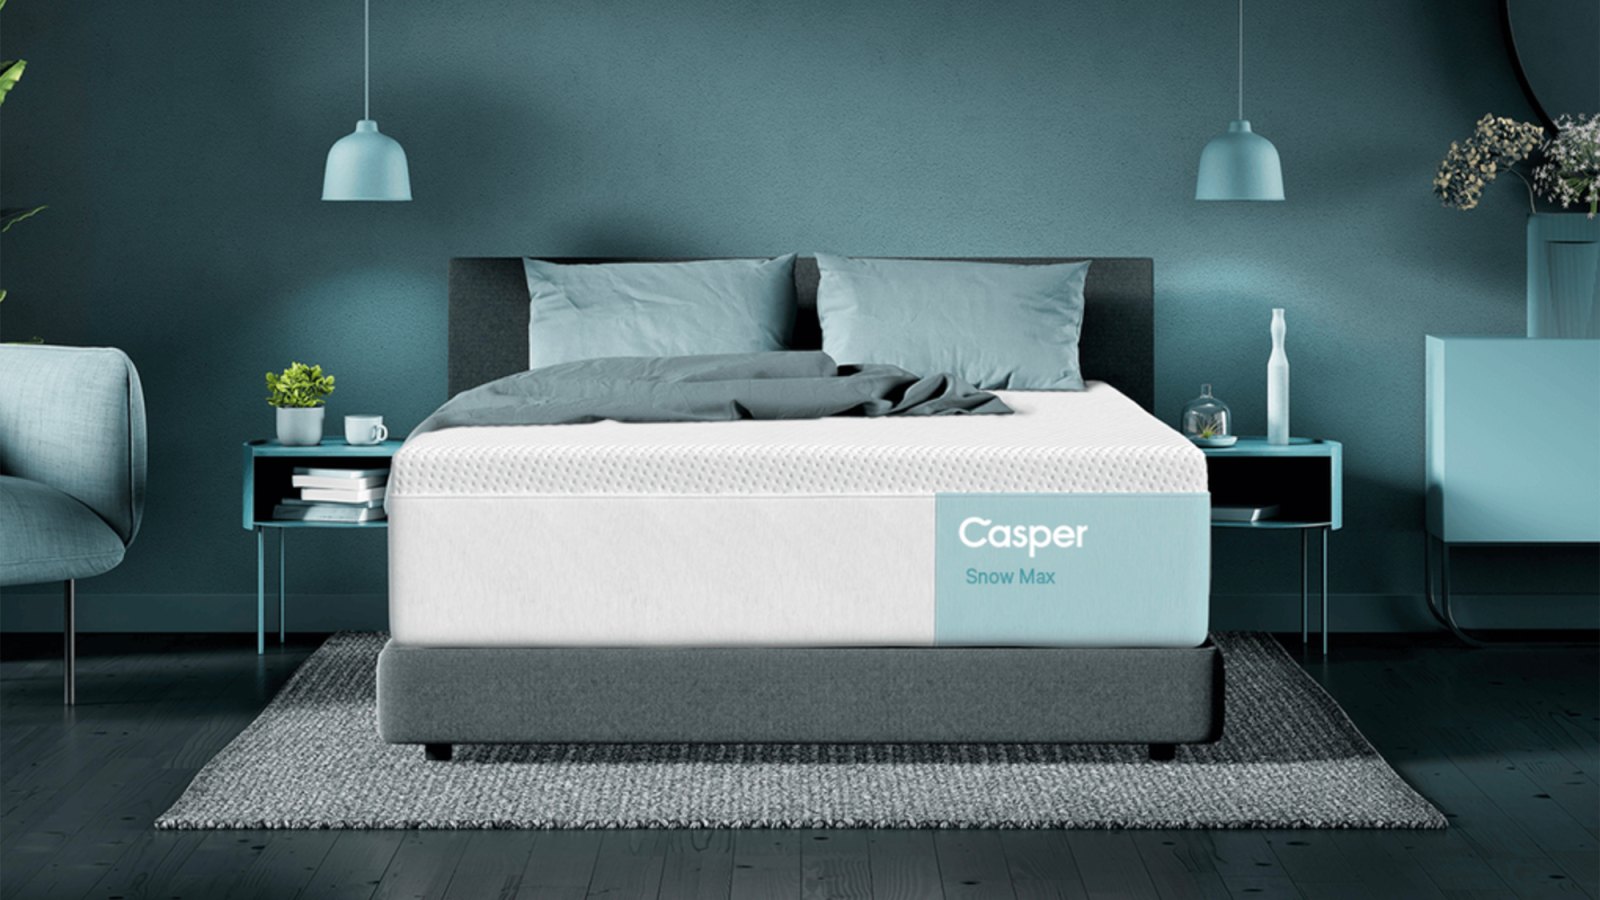 casper-snow-max-hybrid-mattress